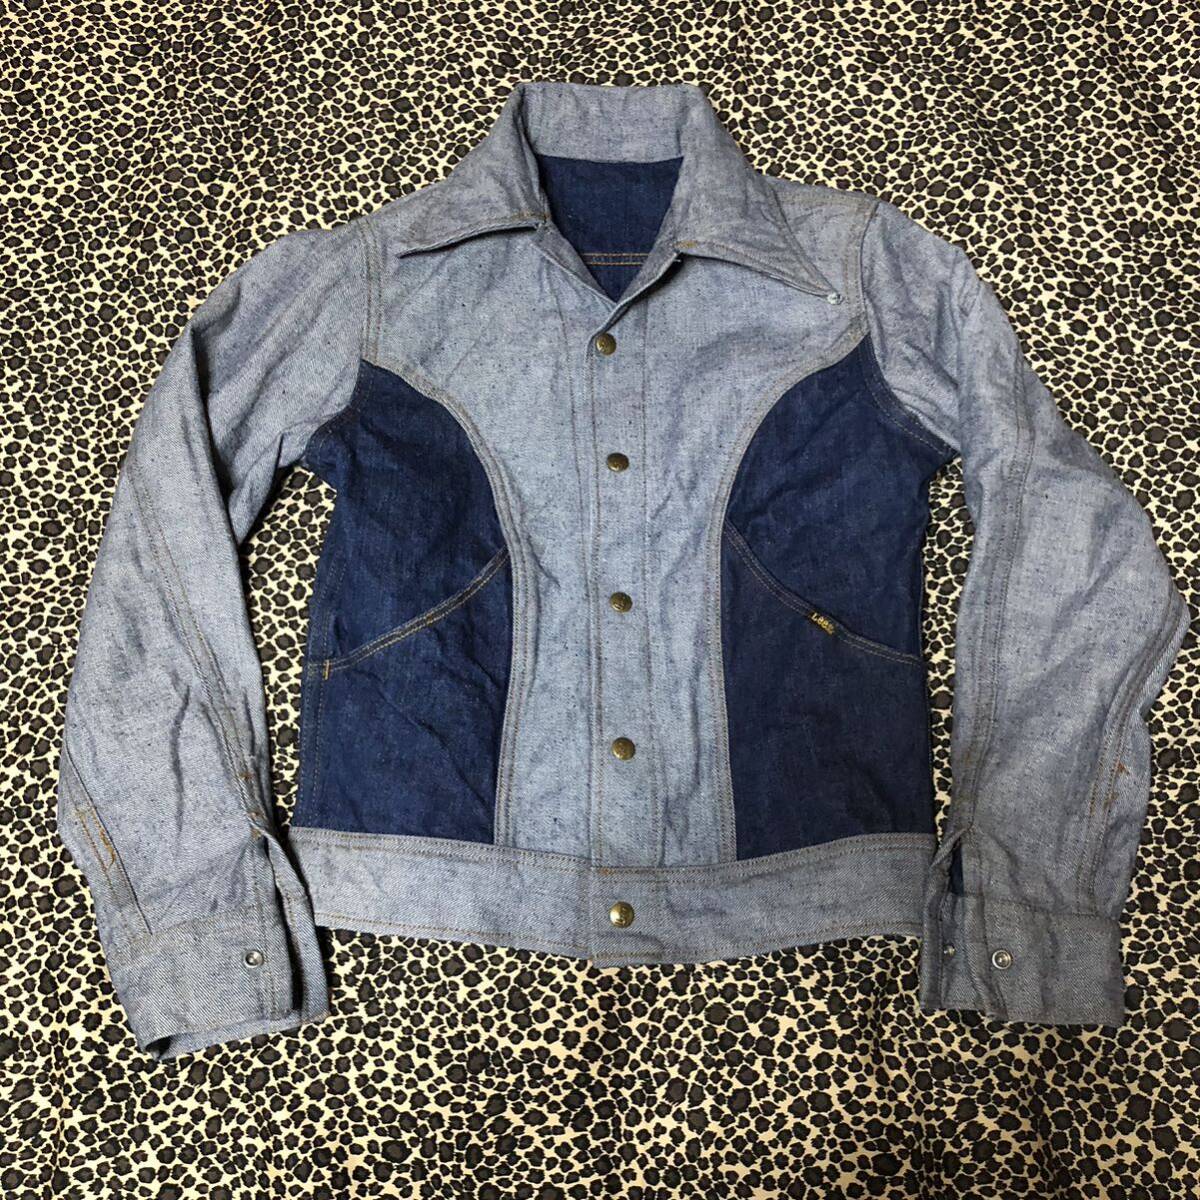 70's USA製 Lee リバーシブル デニムジャケット Gジャン 70年代 ヴィンテージ ブルゾンデニム ジャケット アメリカ製 jacket denim vintageの画像3